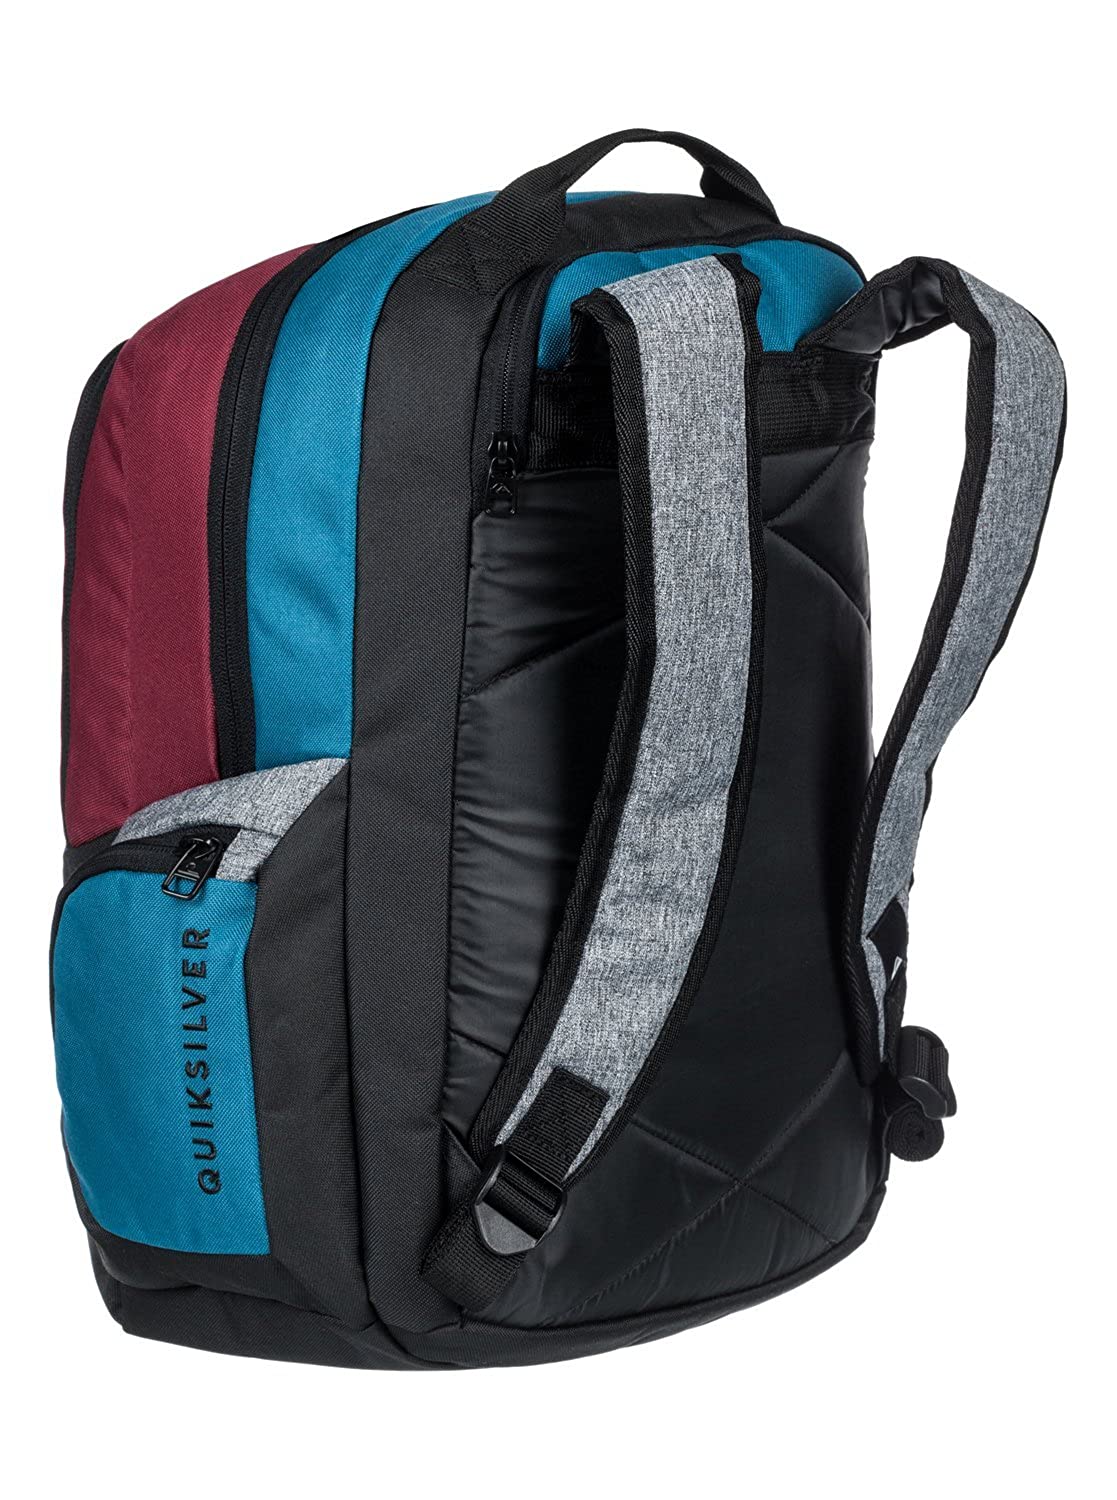 Mochila Quiksilver doble chico EQYBP03418 Schoolie Backpack bolsillo gris azul y granate | Berart - Tienda de Moda en Gausach, Vielha, Valle de Aran